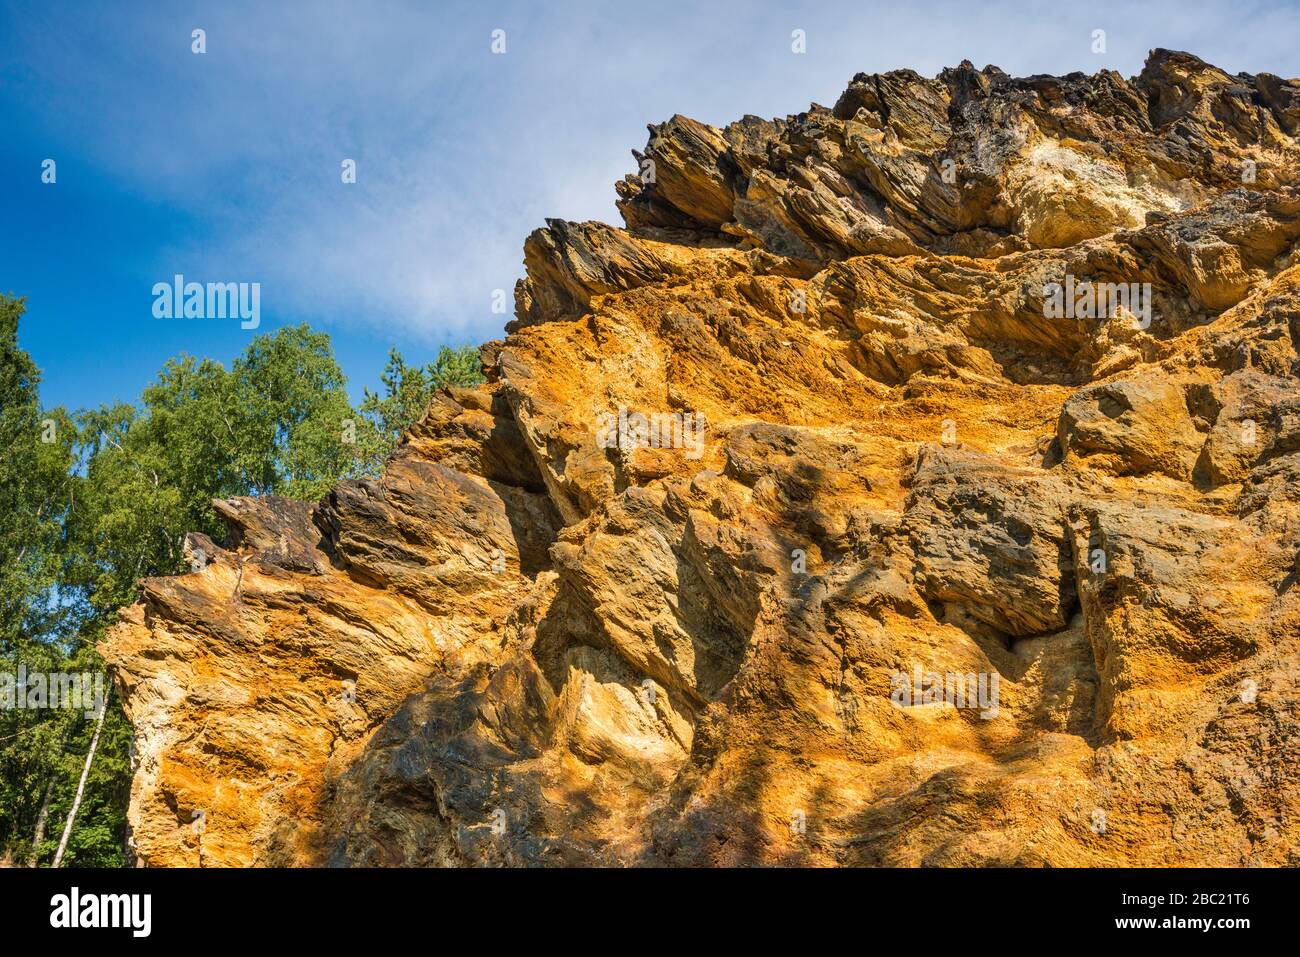 Granit-Felsen an bunten Lakelets (Kolorowe Jeziorka), ehemaliges Pyrit-Bergbaugebiet in Rudawy-Janowickie-Gebirge, Niedermösien, Polen Stockfoto